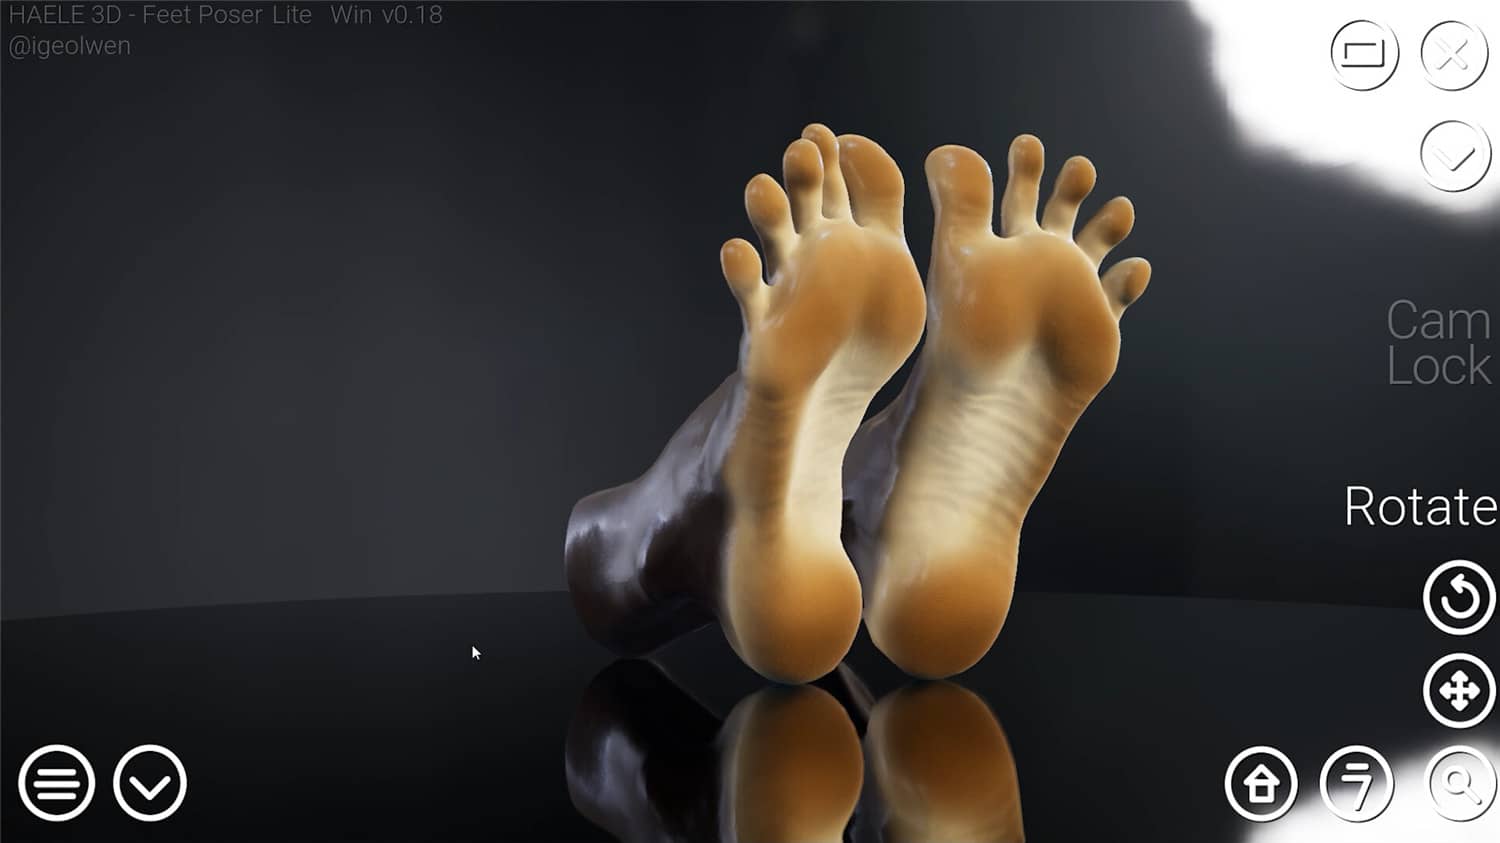 足部造型模拟器/HAELE 3D - Feet Poser Lite-2